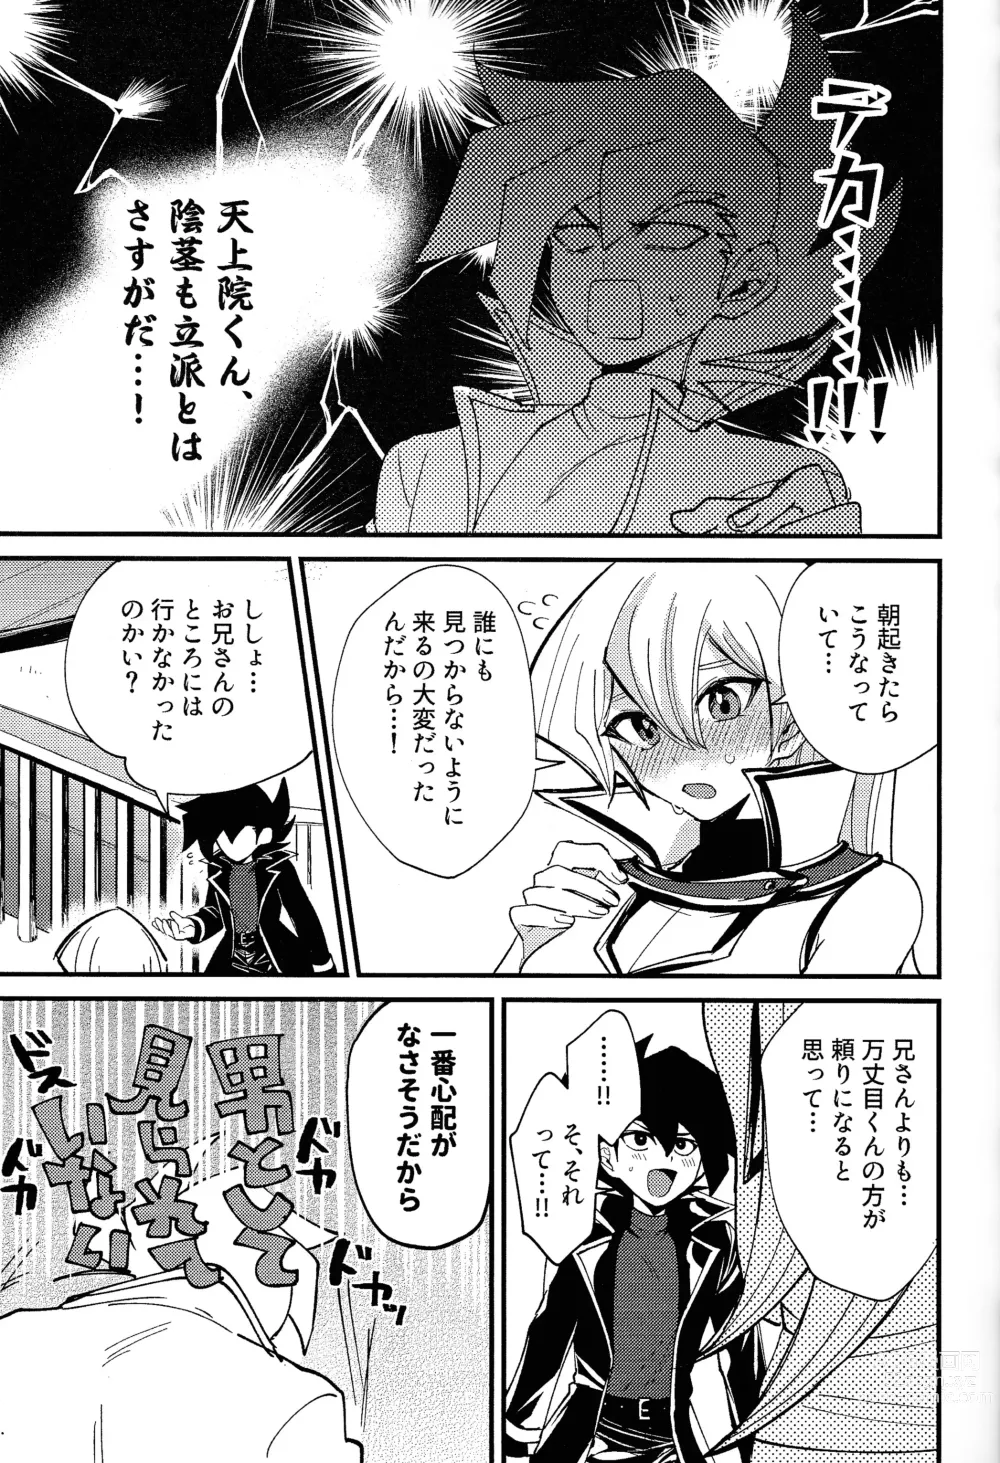 Page 6 of doujinshi Ashita kara soku ochi Surrender